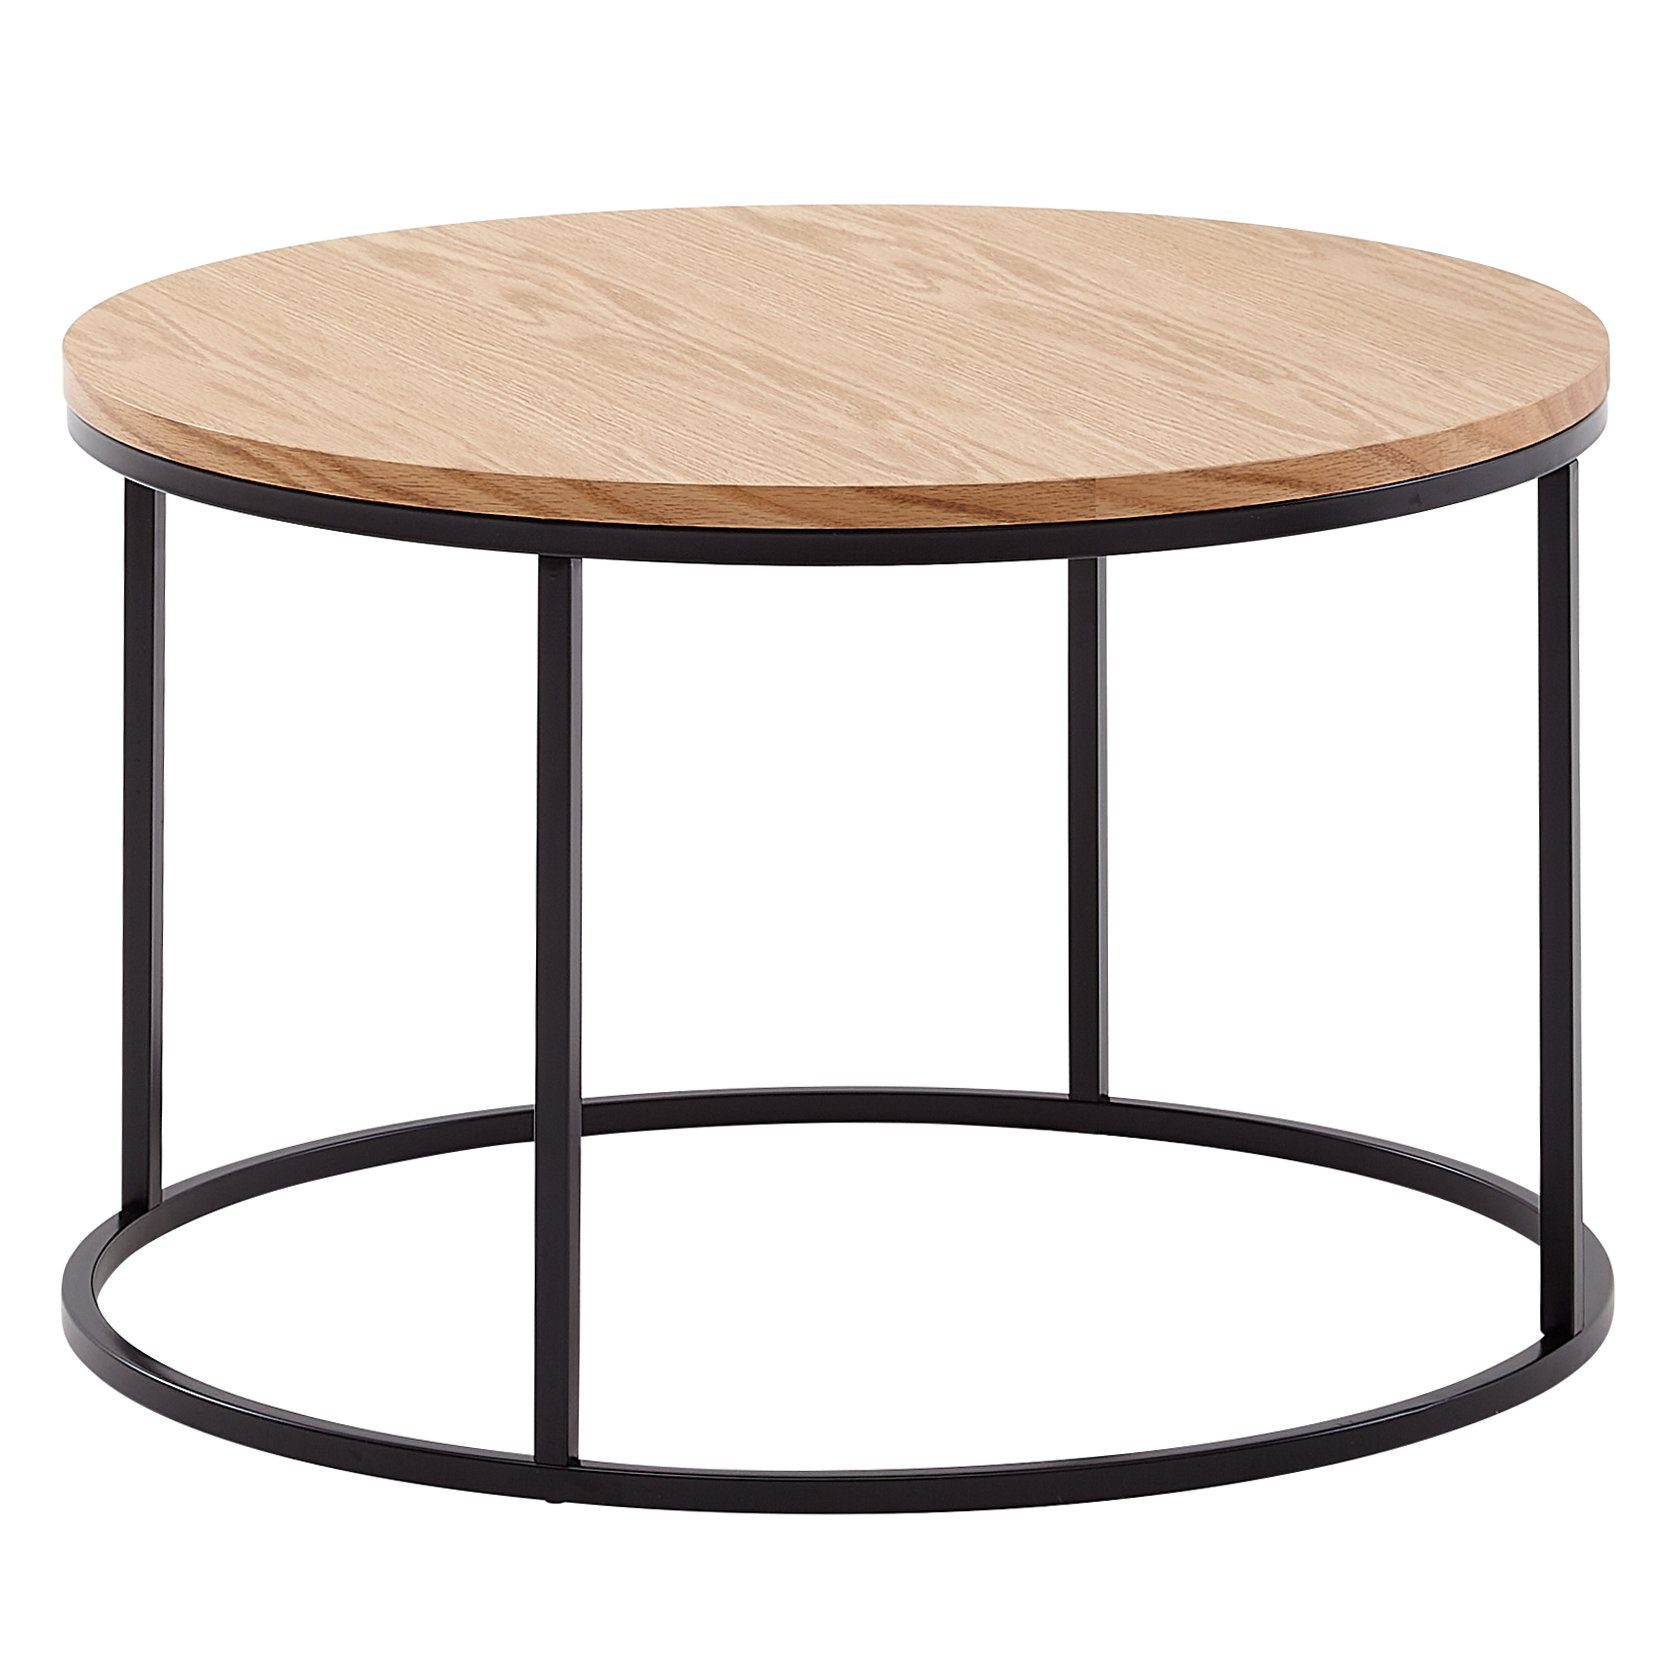 Wohnling Couchtisch WL6.511 (70x70x45 cm Sofatisch Holz / Metall, Tisch Eiche), Kaffeetisch Rund, Design Wohnzimmertisch Modern | Couchtische